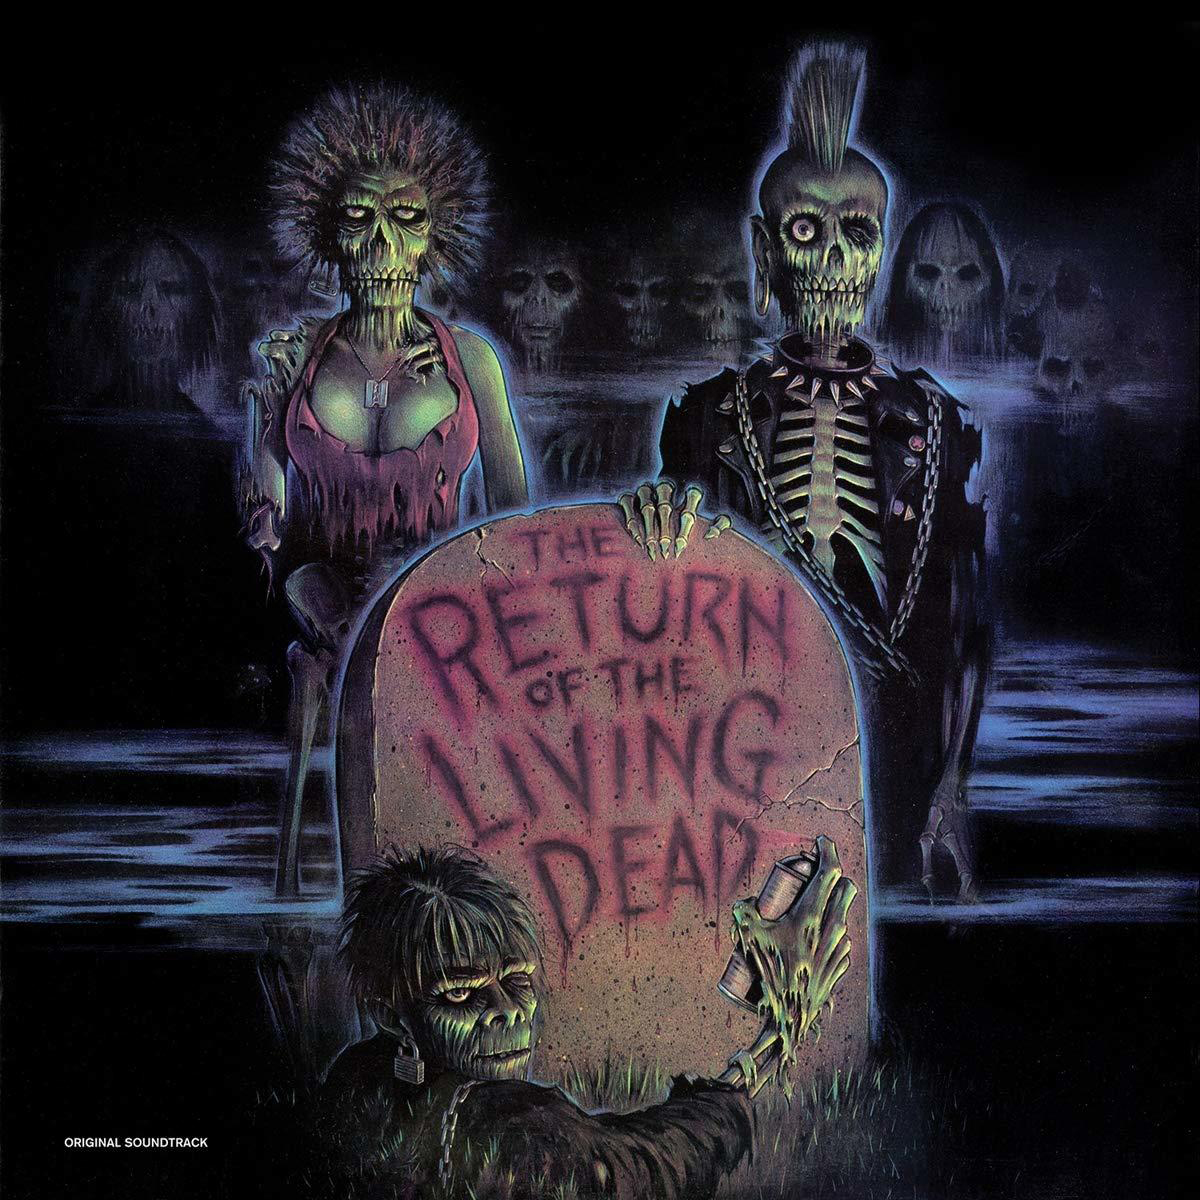 OF - O.S.T. THE - RETURN LIVING DEAD (Vinyl)